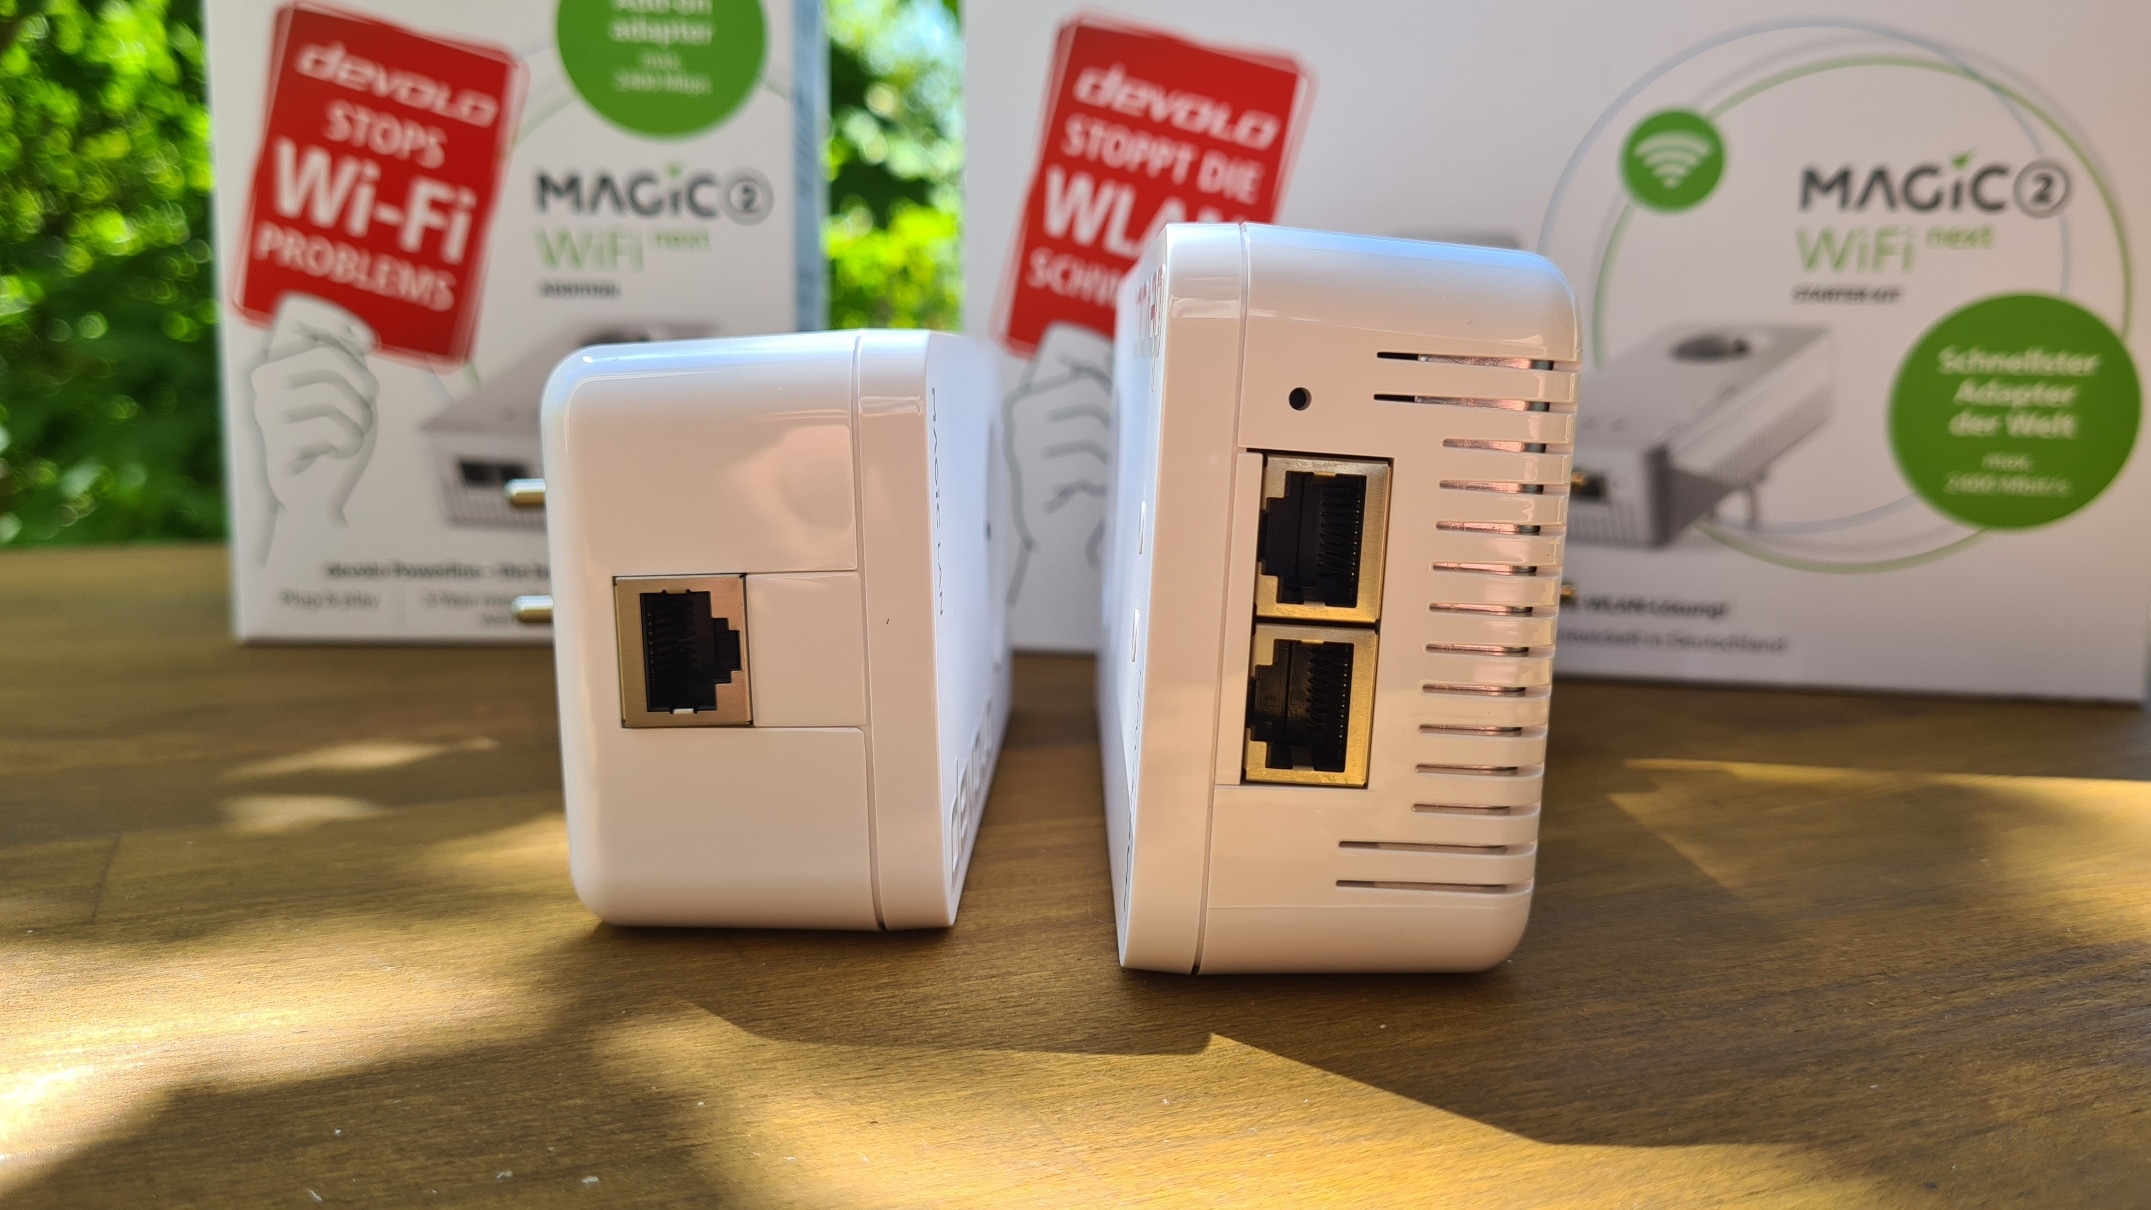 Powerline-WLAN einrichten mit dem Devolo Magic 2 WiFi next